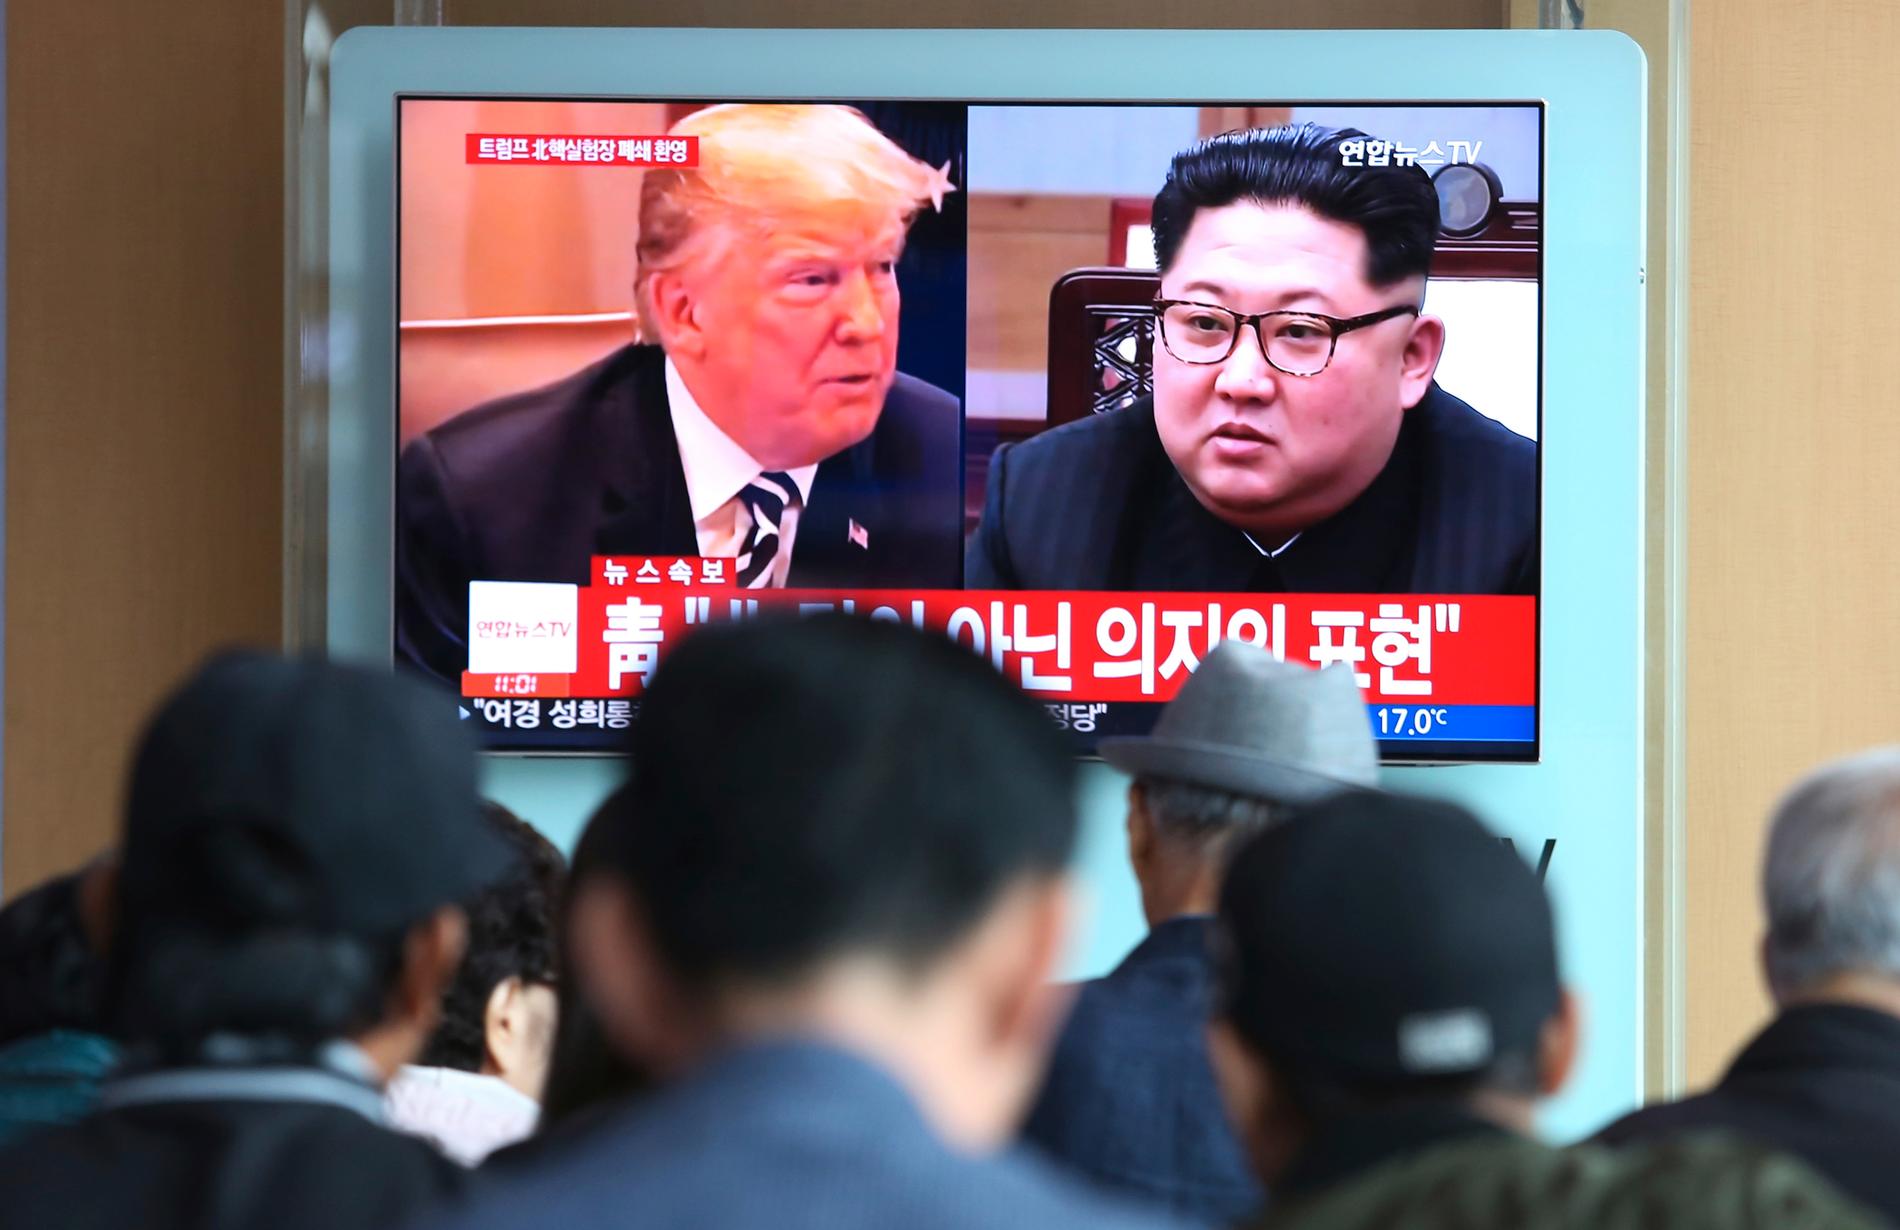 Nordkorea ställer in onsdagens möte med Sydkorea, och frågan är om det mellan Donald Trump och Kim Jong-Un blir av.